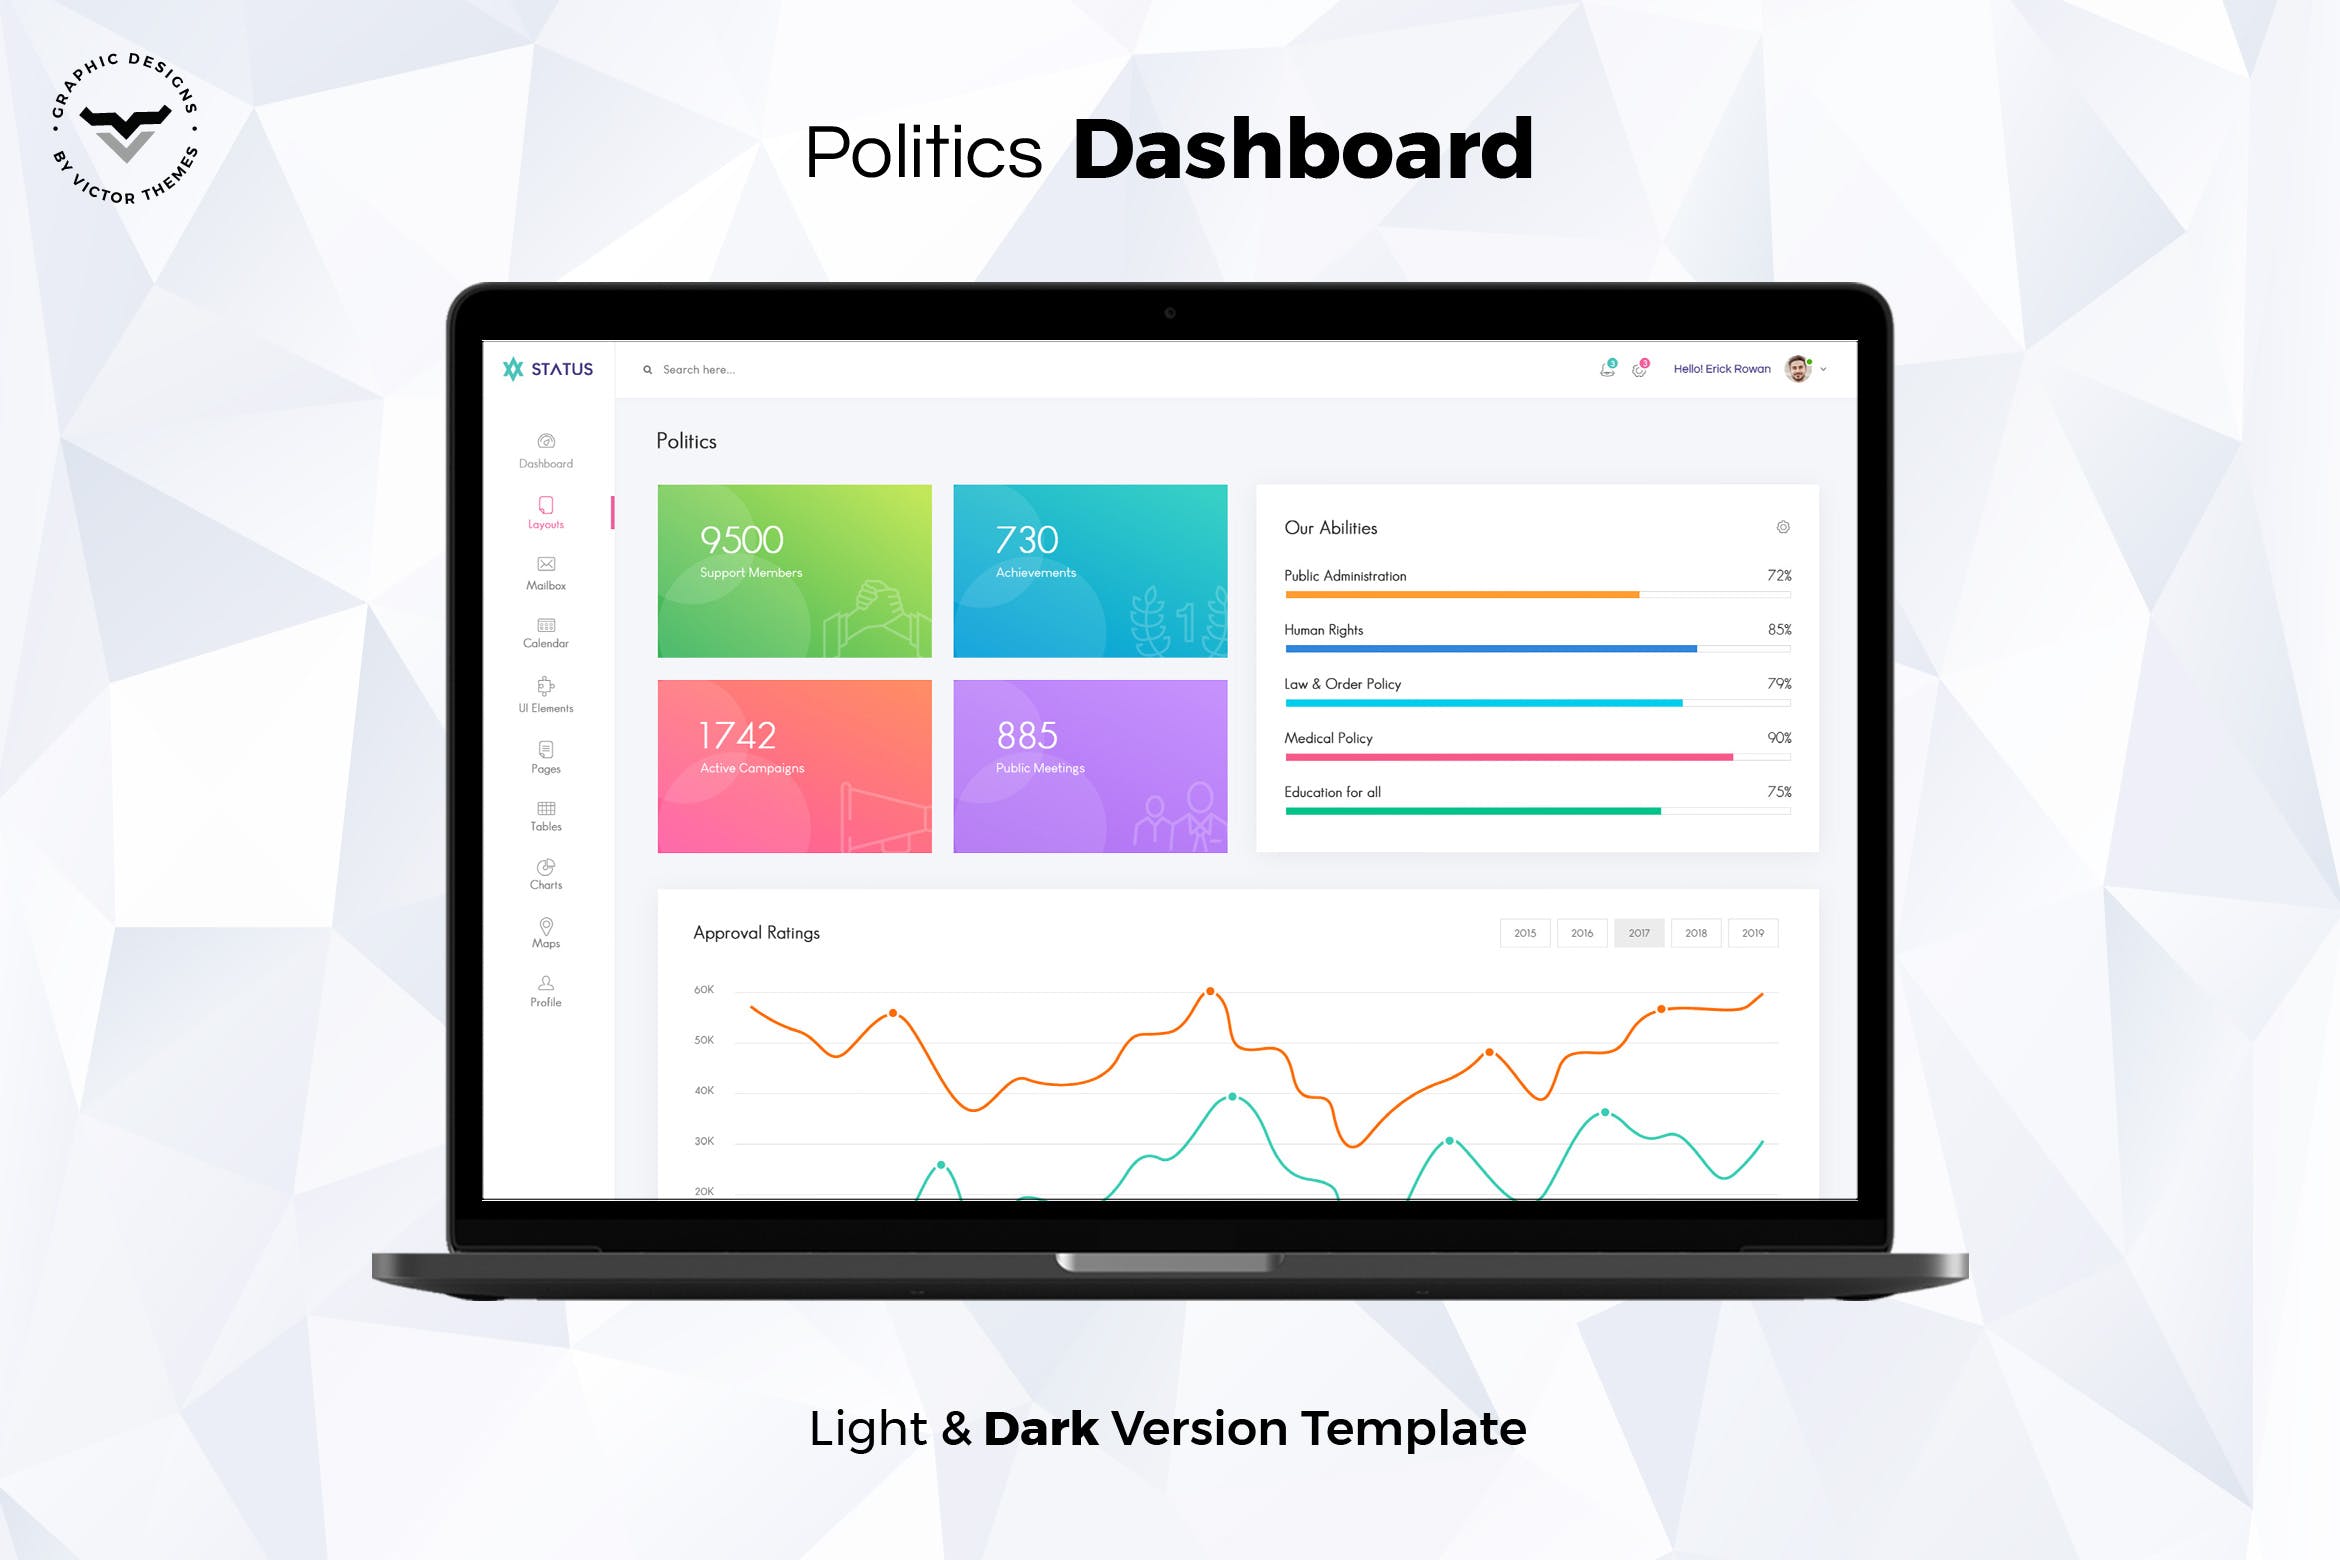 政府部门管理系统后台界面设计非凡图库精选模板 Politics Admin Dashboard UI Kit插图